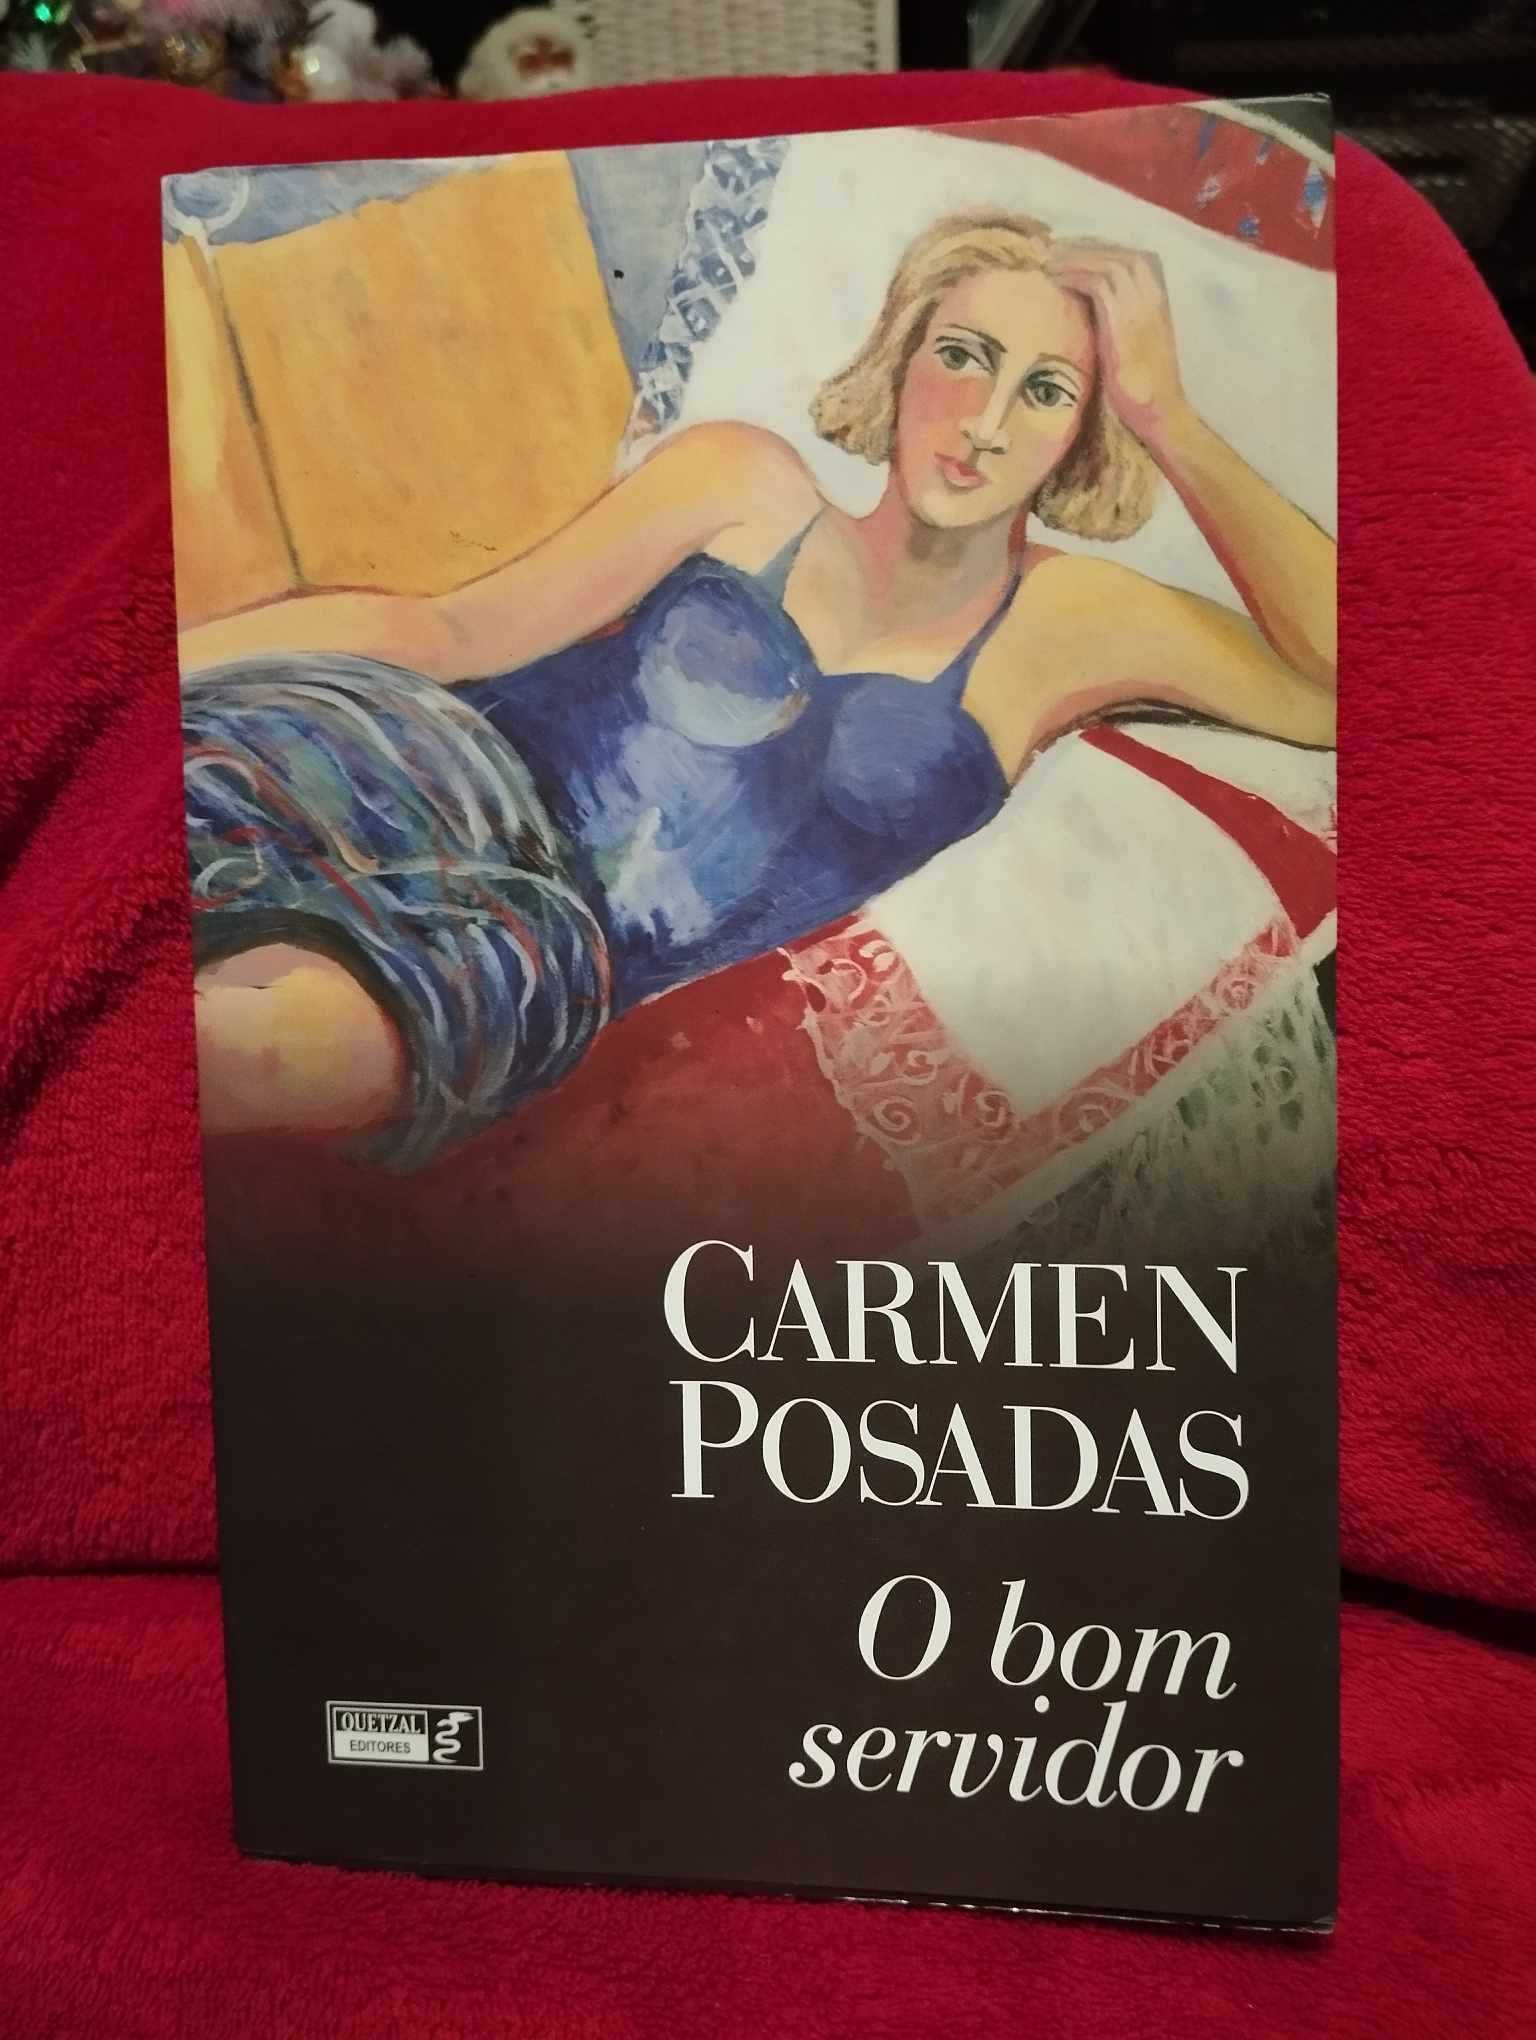 O bom servidor – Carmen Posadas